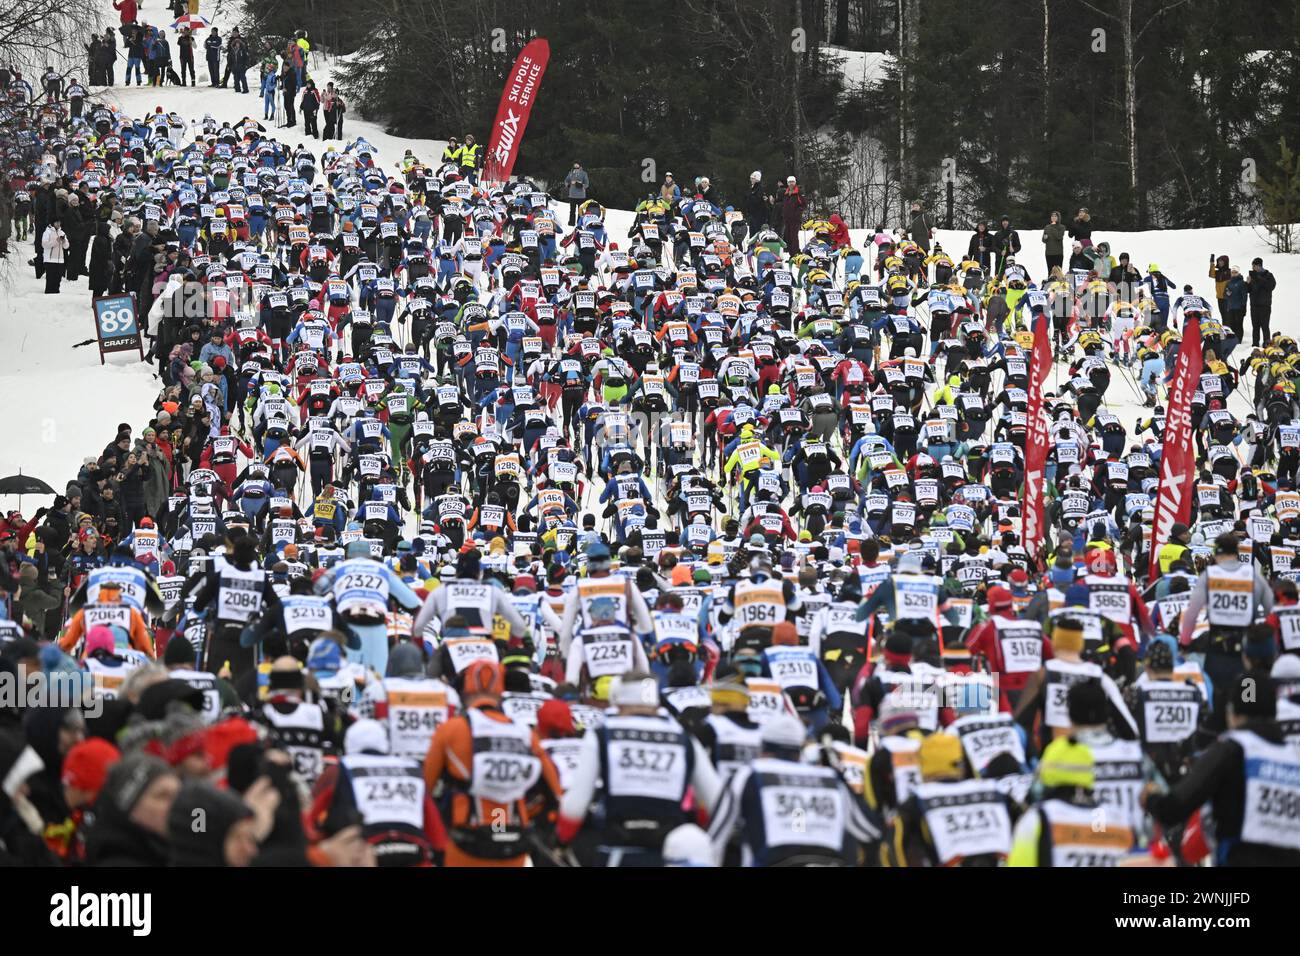 Inizio della gara di sci classico Vasaloppet a Sälen, Svezia, domenica mattina 03 MarchFoto: Ulf Palm/TT/codice 9110 credito: TT News Agency/Alamy Live News Foto Stock